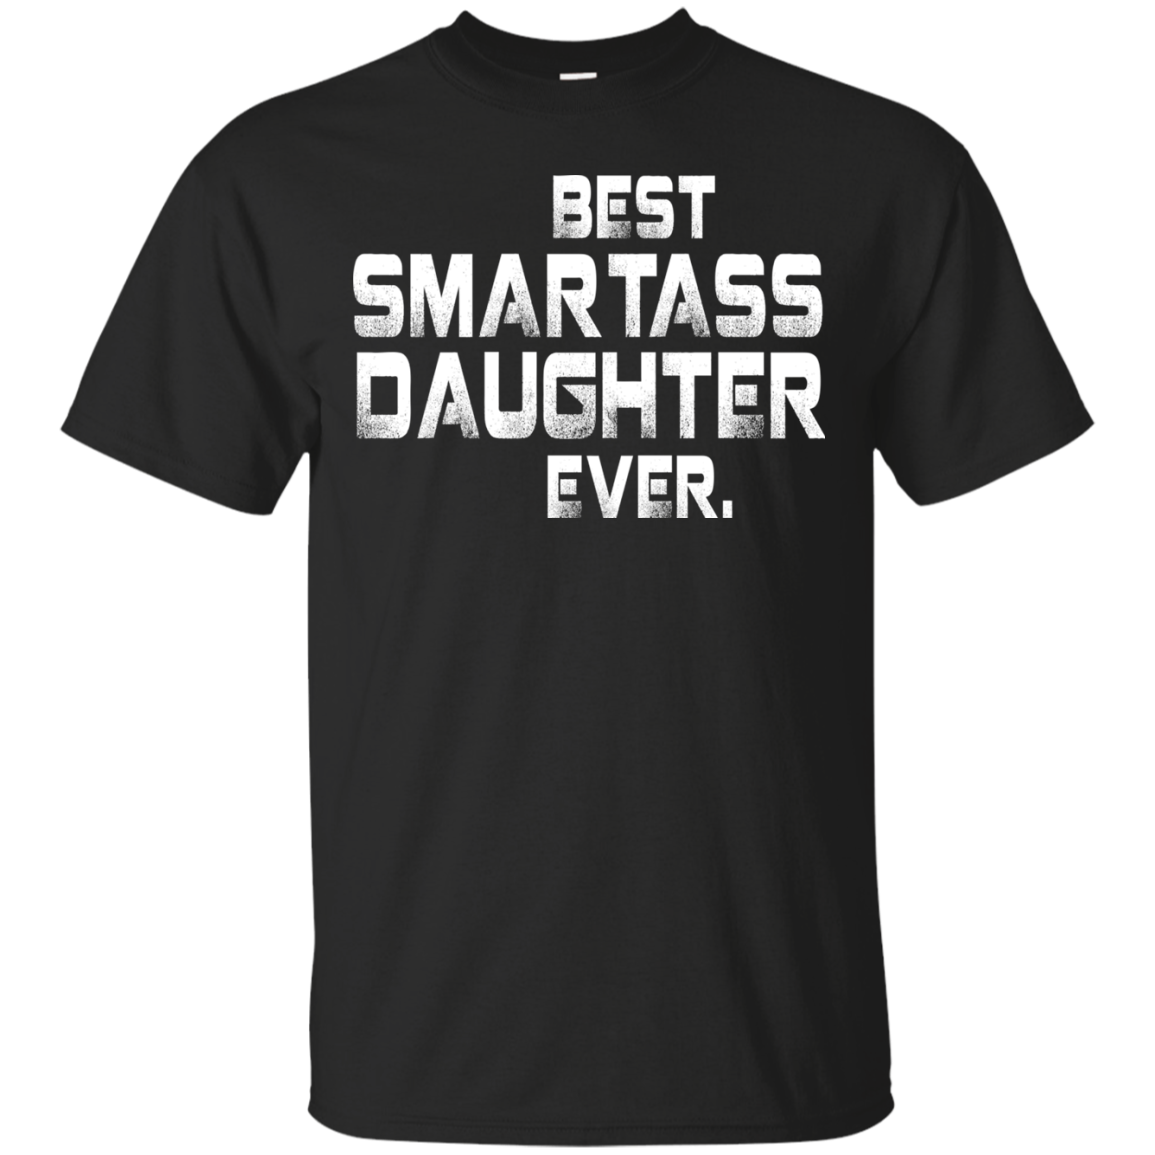 Best Smartass daughter ever shirt, tank, hoodie